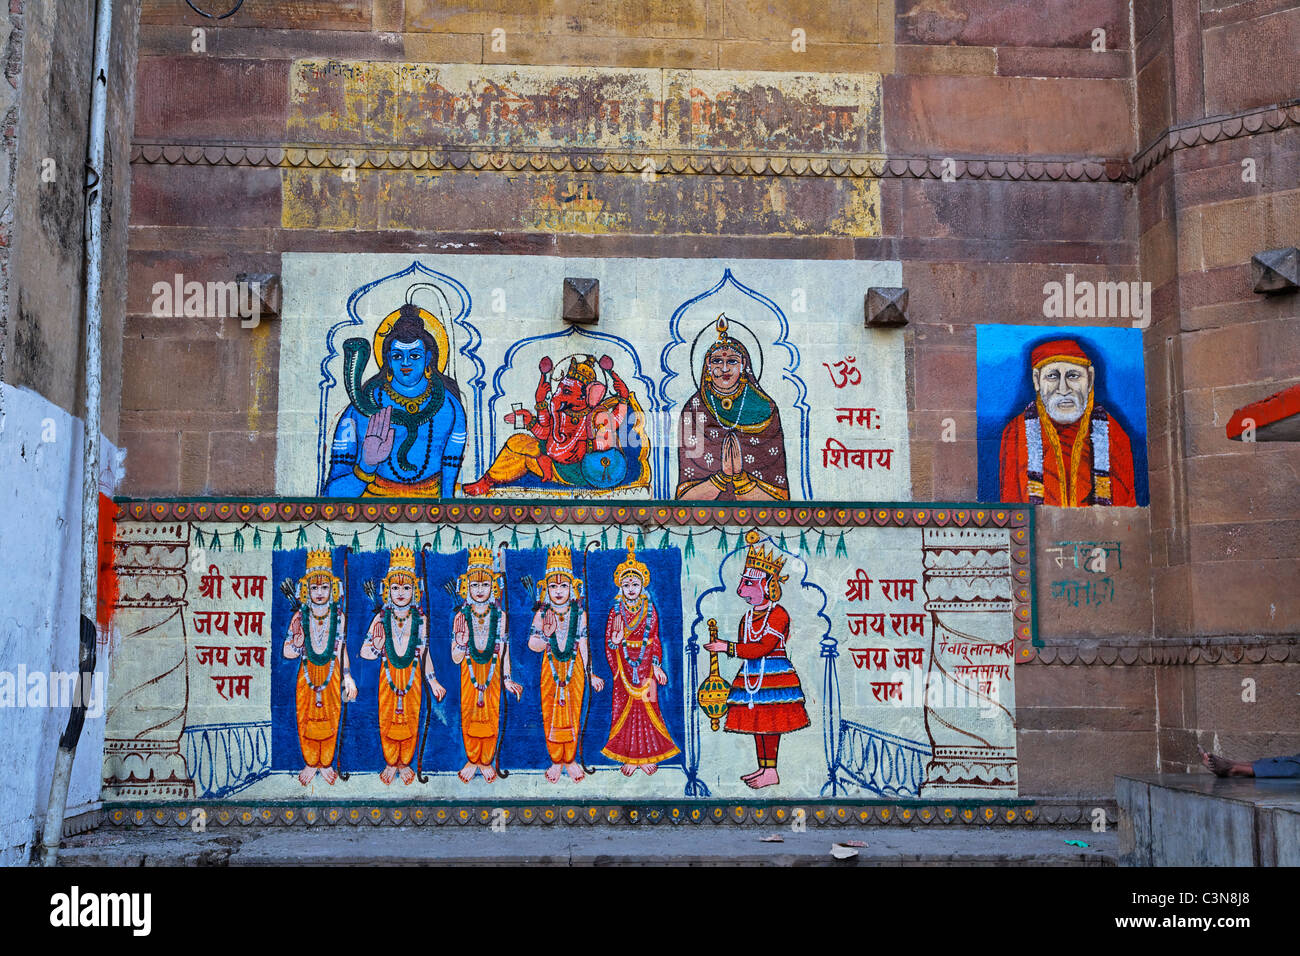 En Uttar Pradesh, India - Varanasi - templo hindú de decoración en los ghats Foto de stock